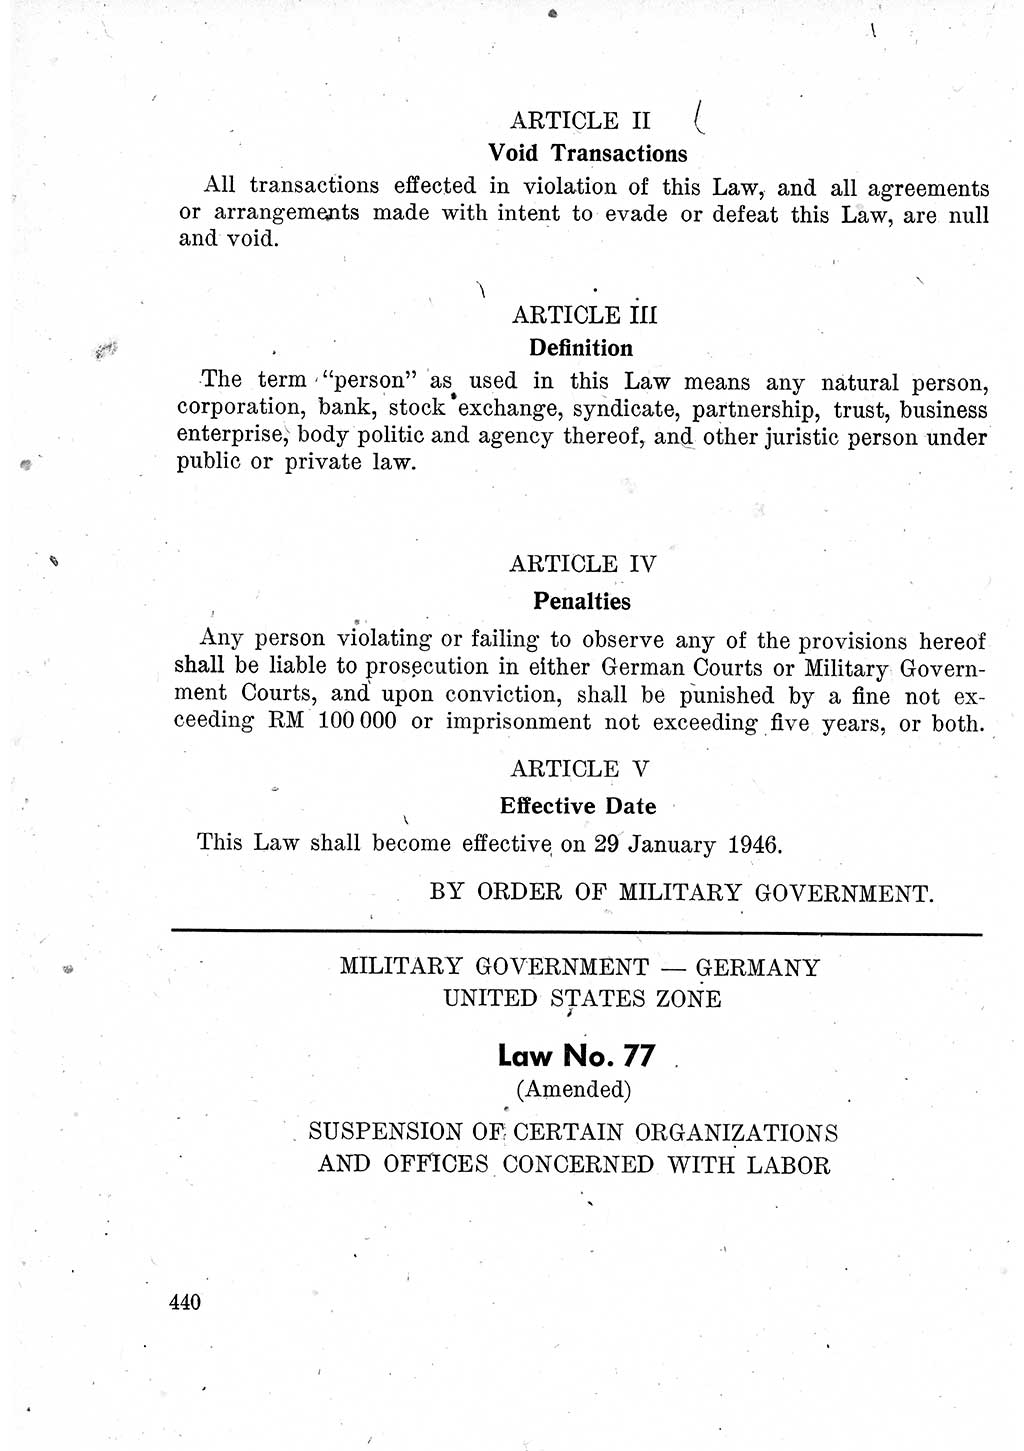 Das Recht der Besatzungsmacht (Deutschland), Proklamationen, Deklerationen, Verordnungen, Gesetze und Bekanntmachungen 1947, Seite 440 (R. Bes. Dtl. 1947, S. 440)